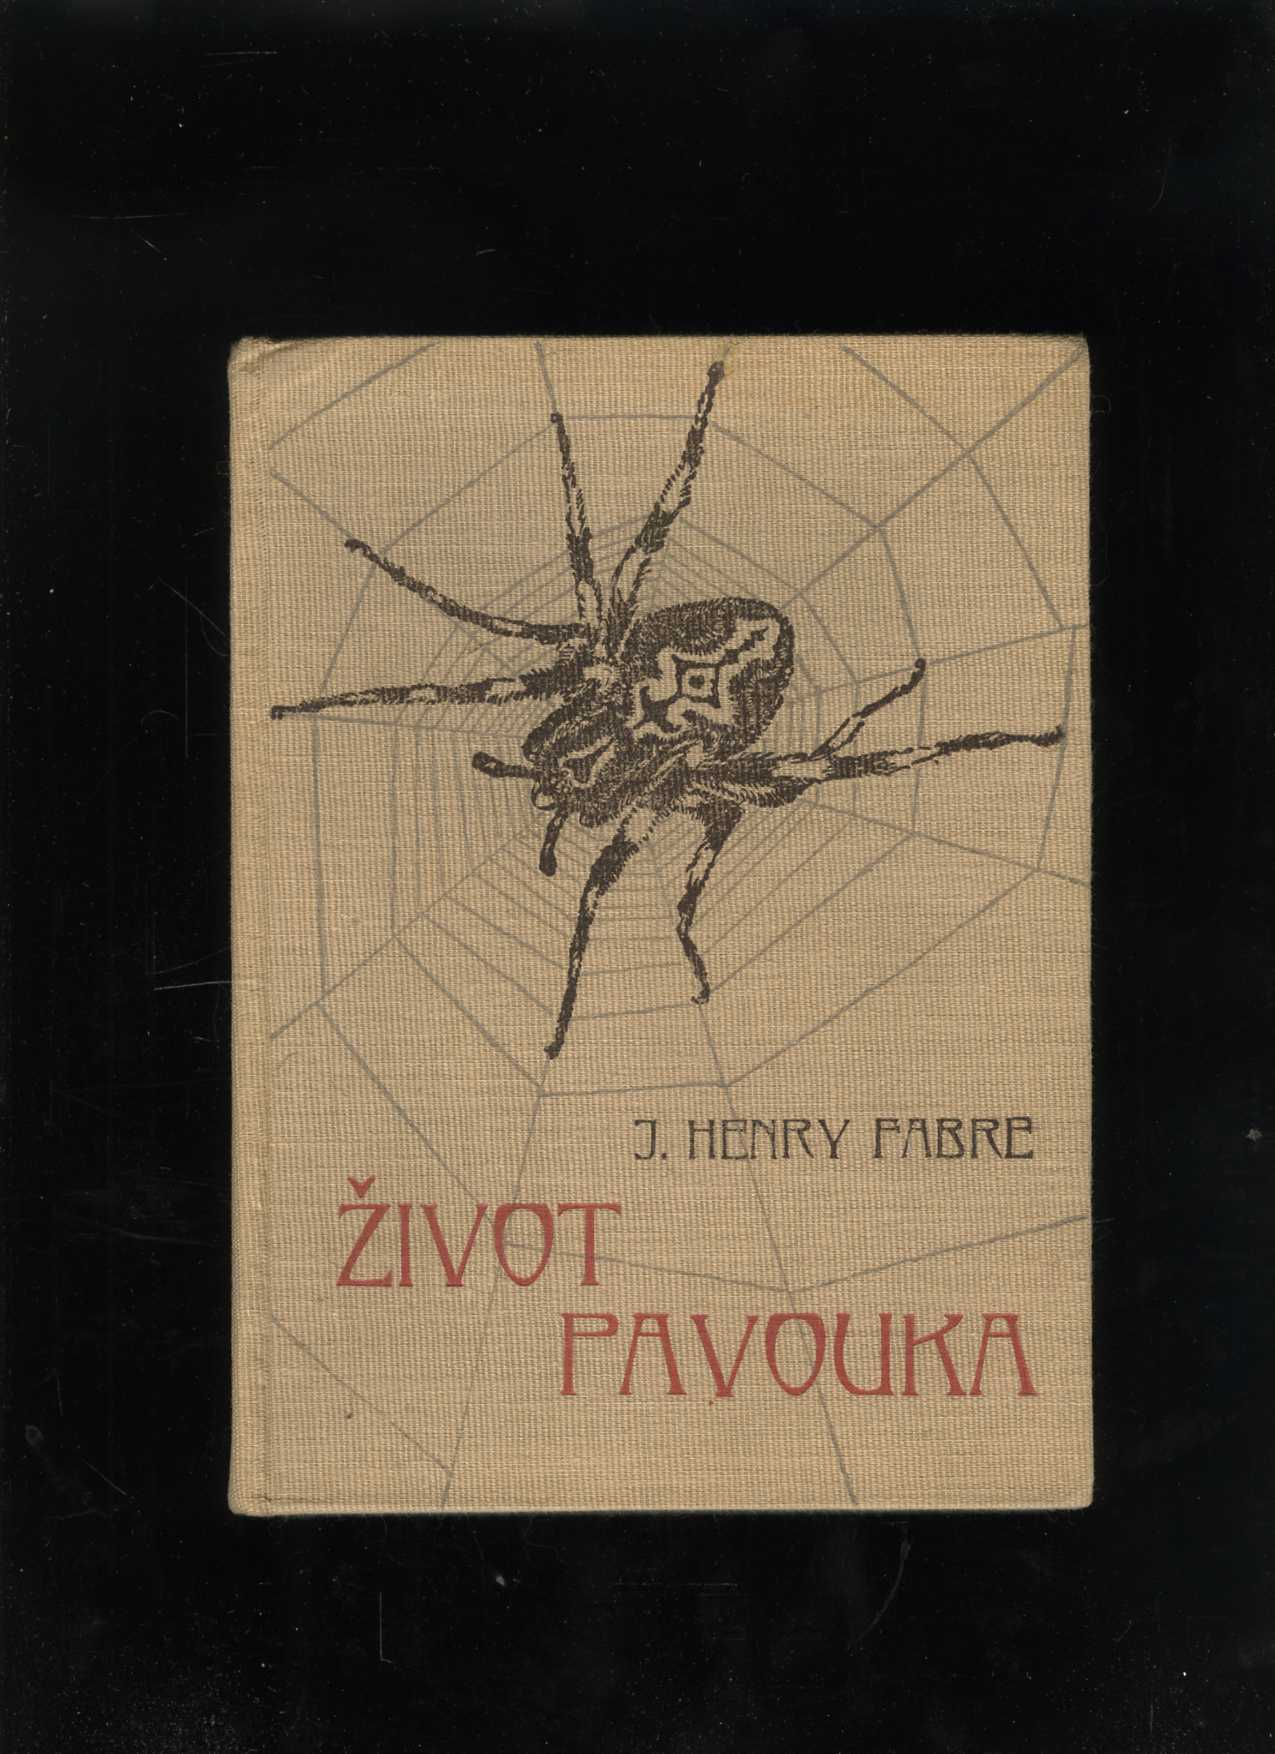 Život pavouka (Jean Henri Fabre)